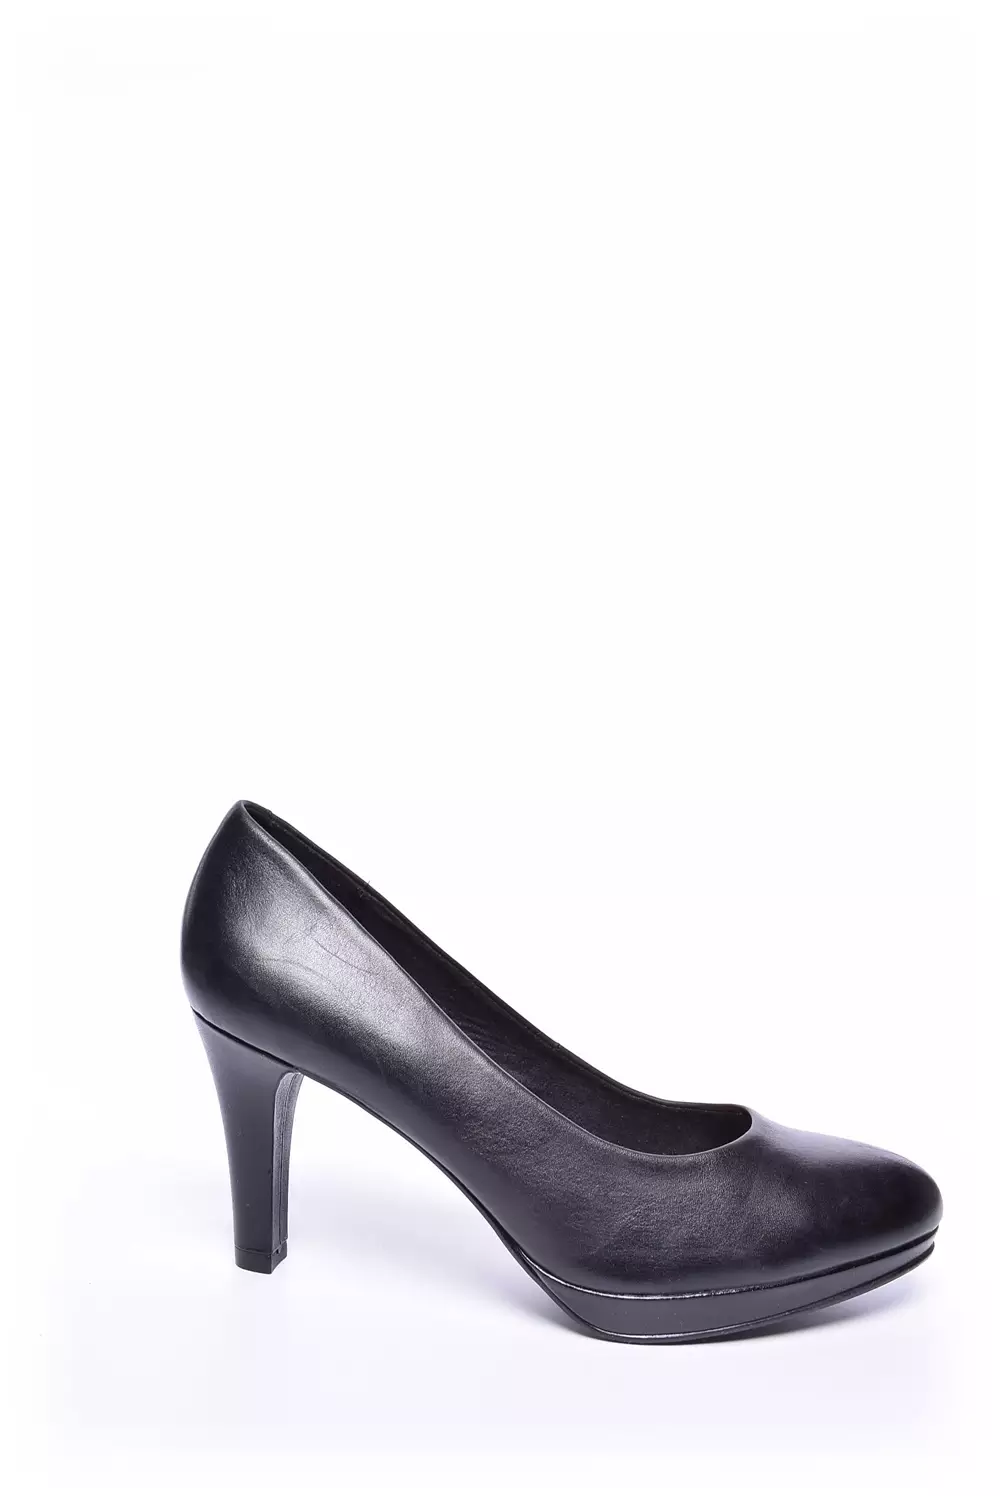 prediction embargo Messy Pantofi damă marca 5th Avenue | Descoperă stilul tău - shoemix.ro